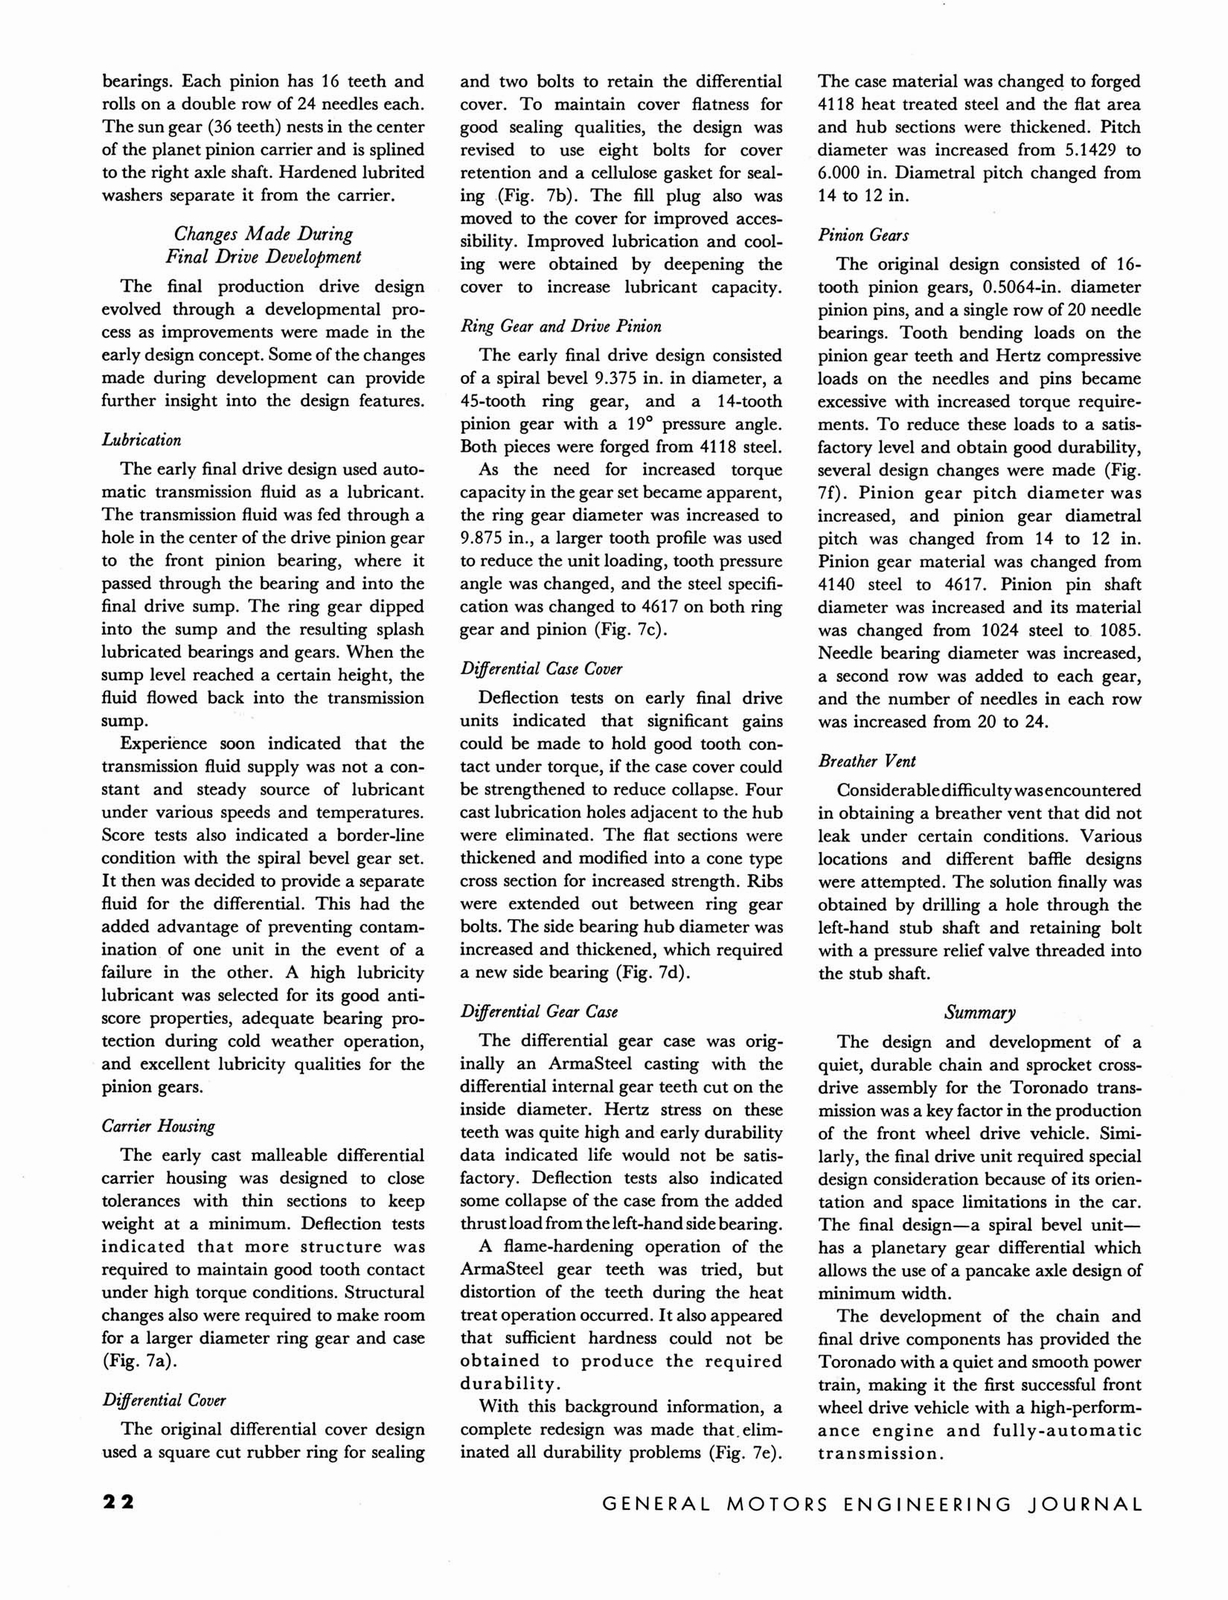 n_1966 GM Eng Journal Qtr2-22.jpg